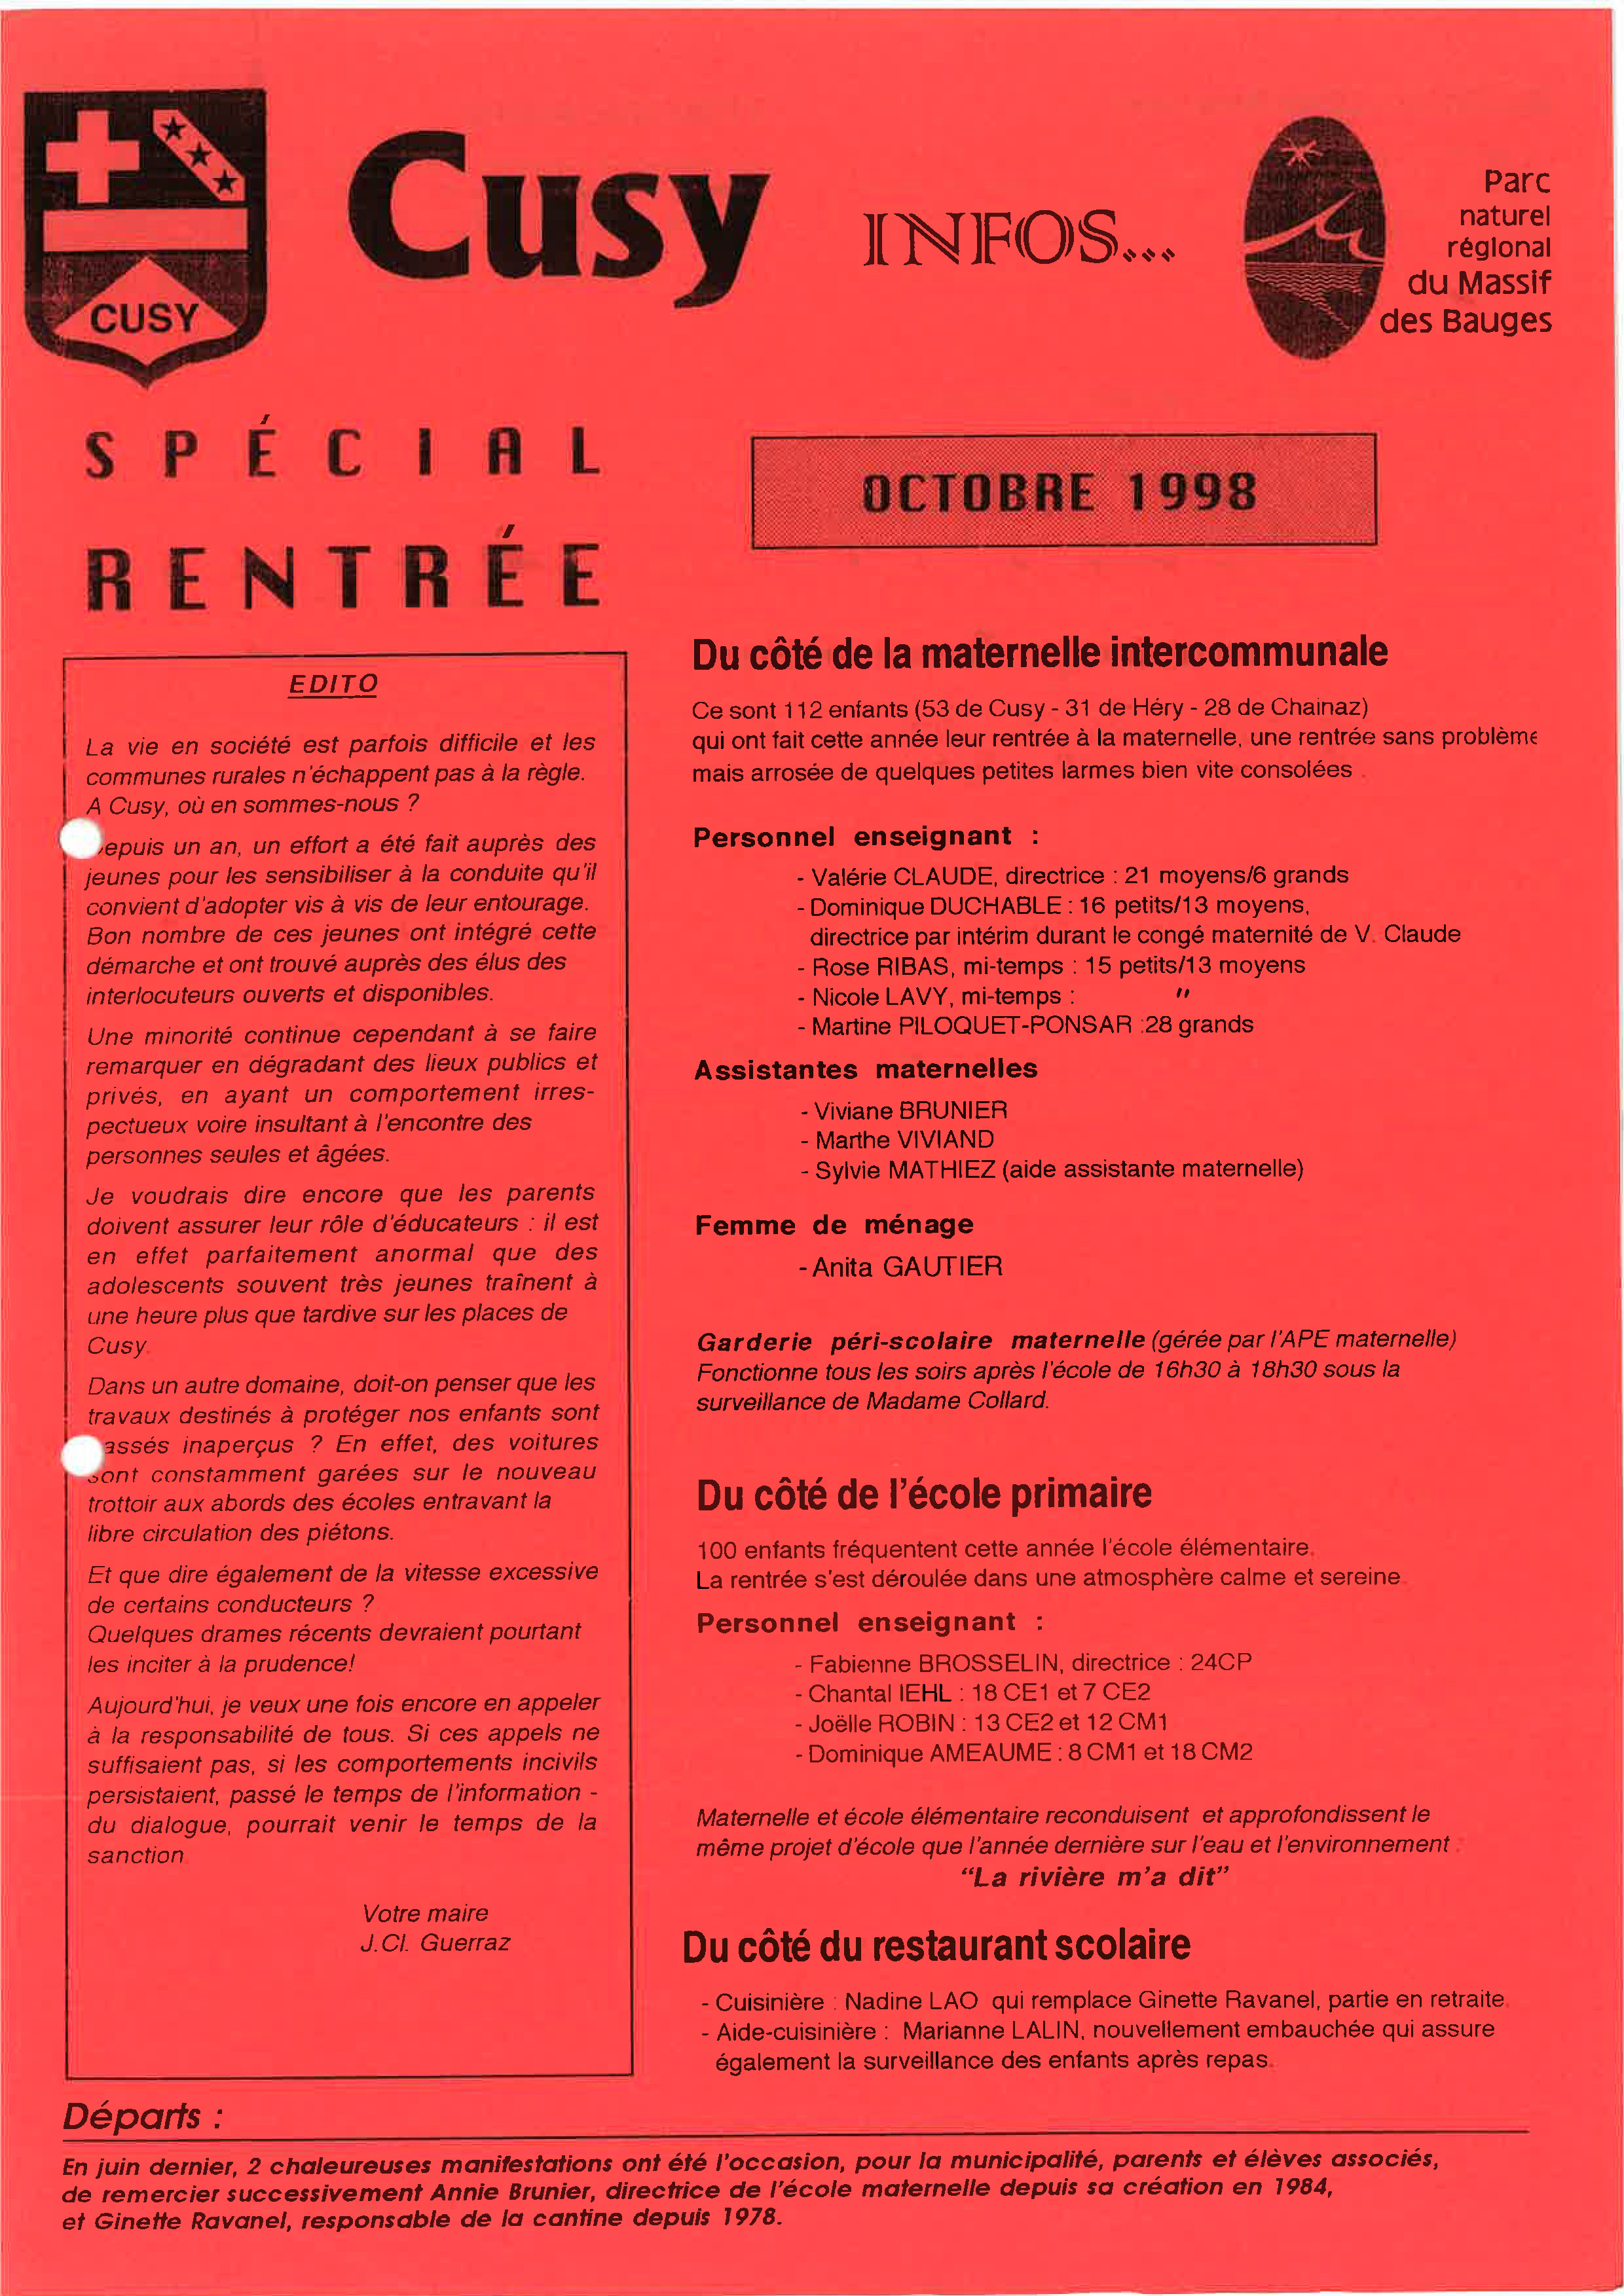 1998 10 Cusy Infos spécial rentrée_Page_1.jpg